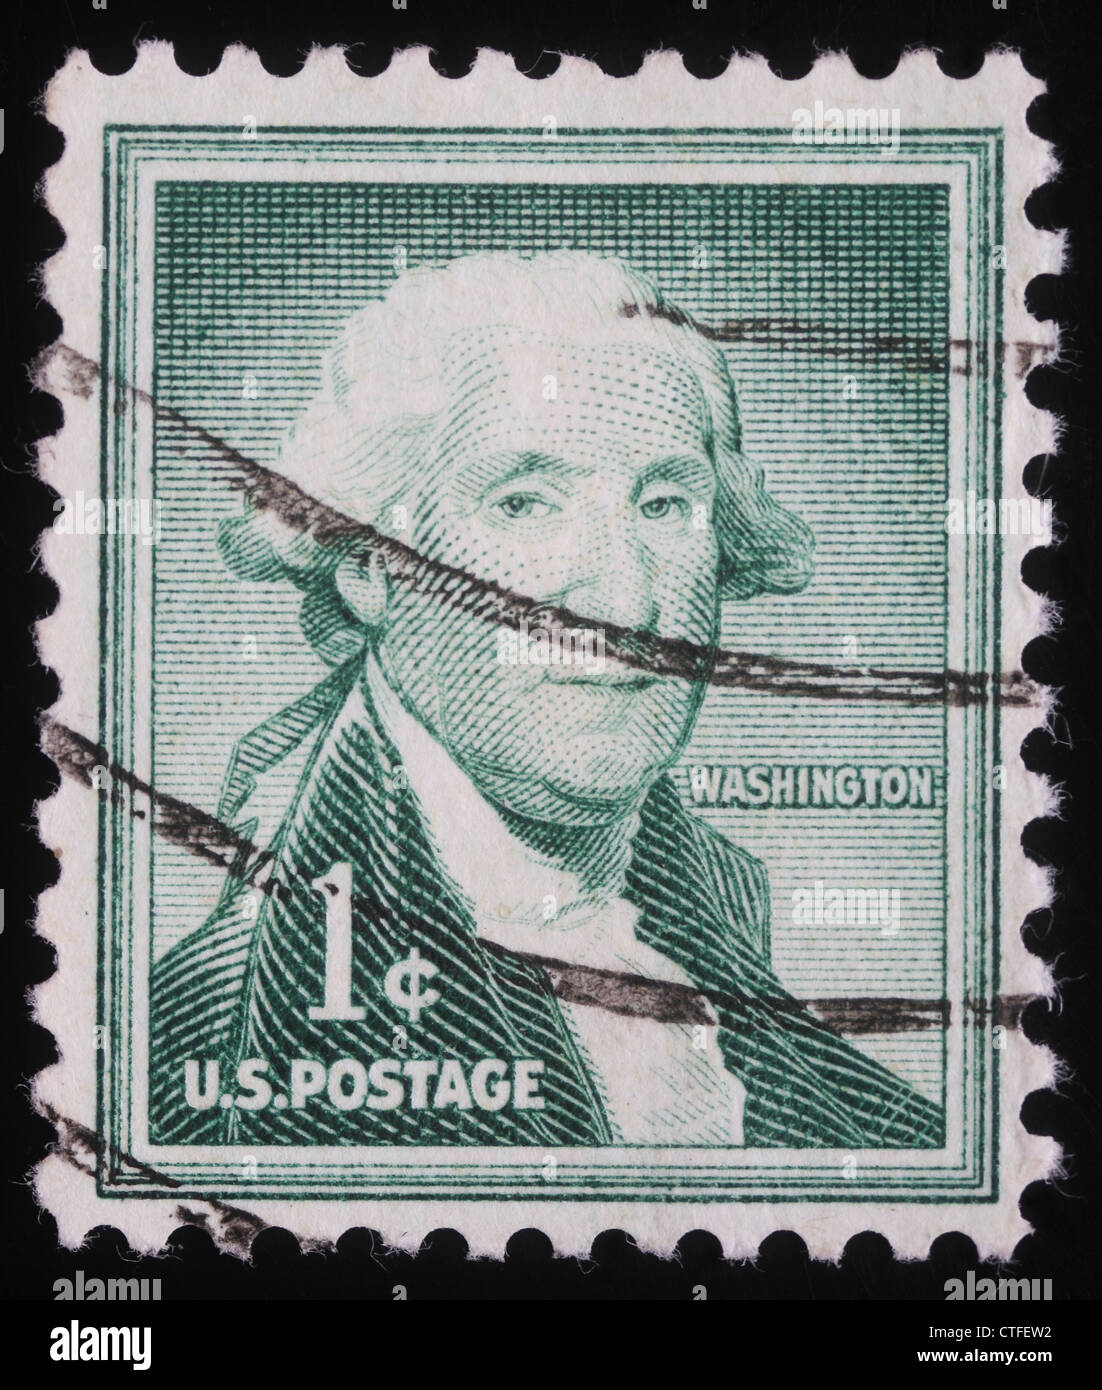 USA – um 1950: Eine Briefmarke zeigt Bild Porträt Thomas Jefferson war der dritte Präsident der Vereinigten Staaten Stockfoto